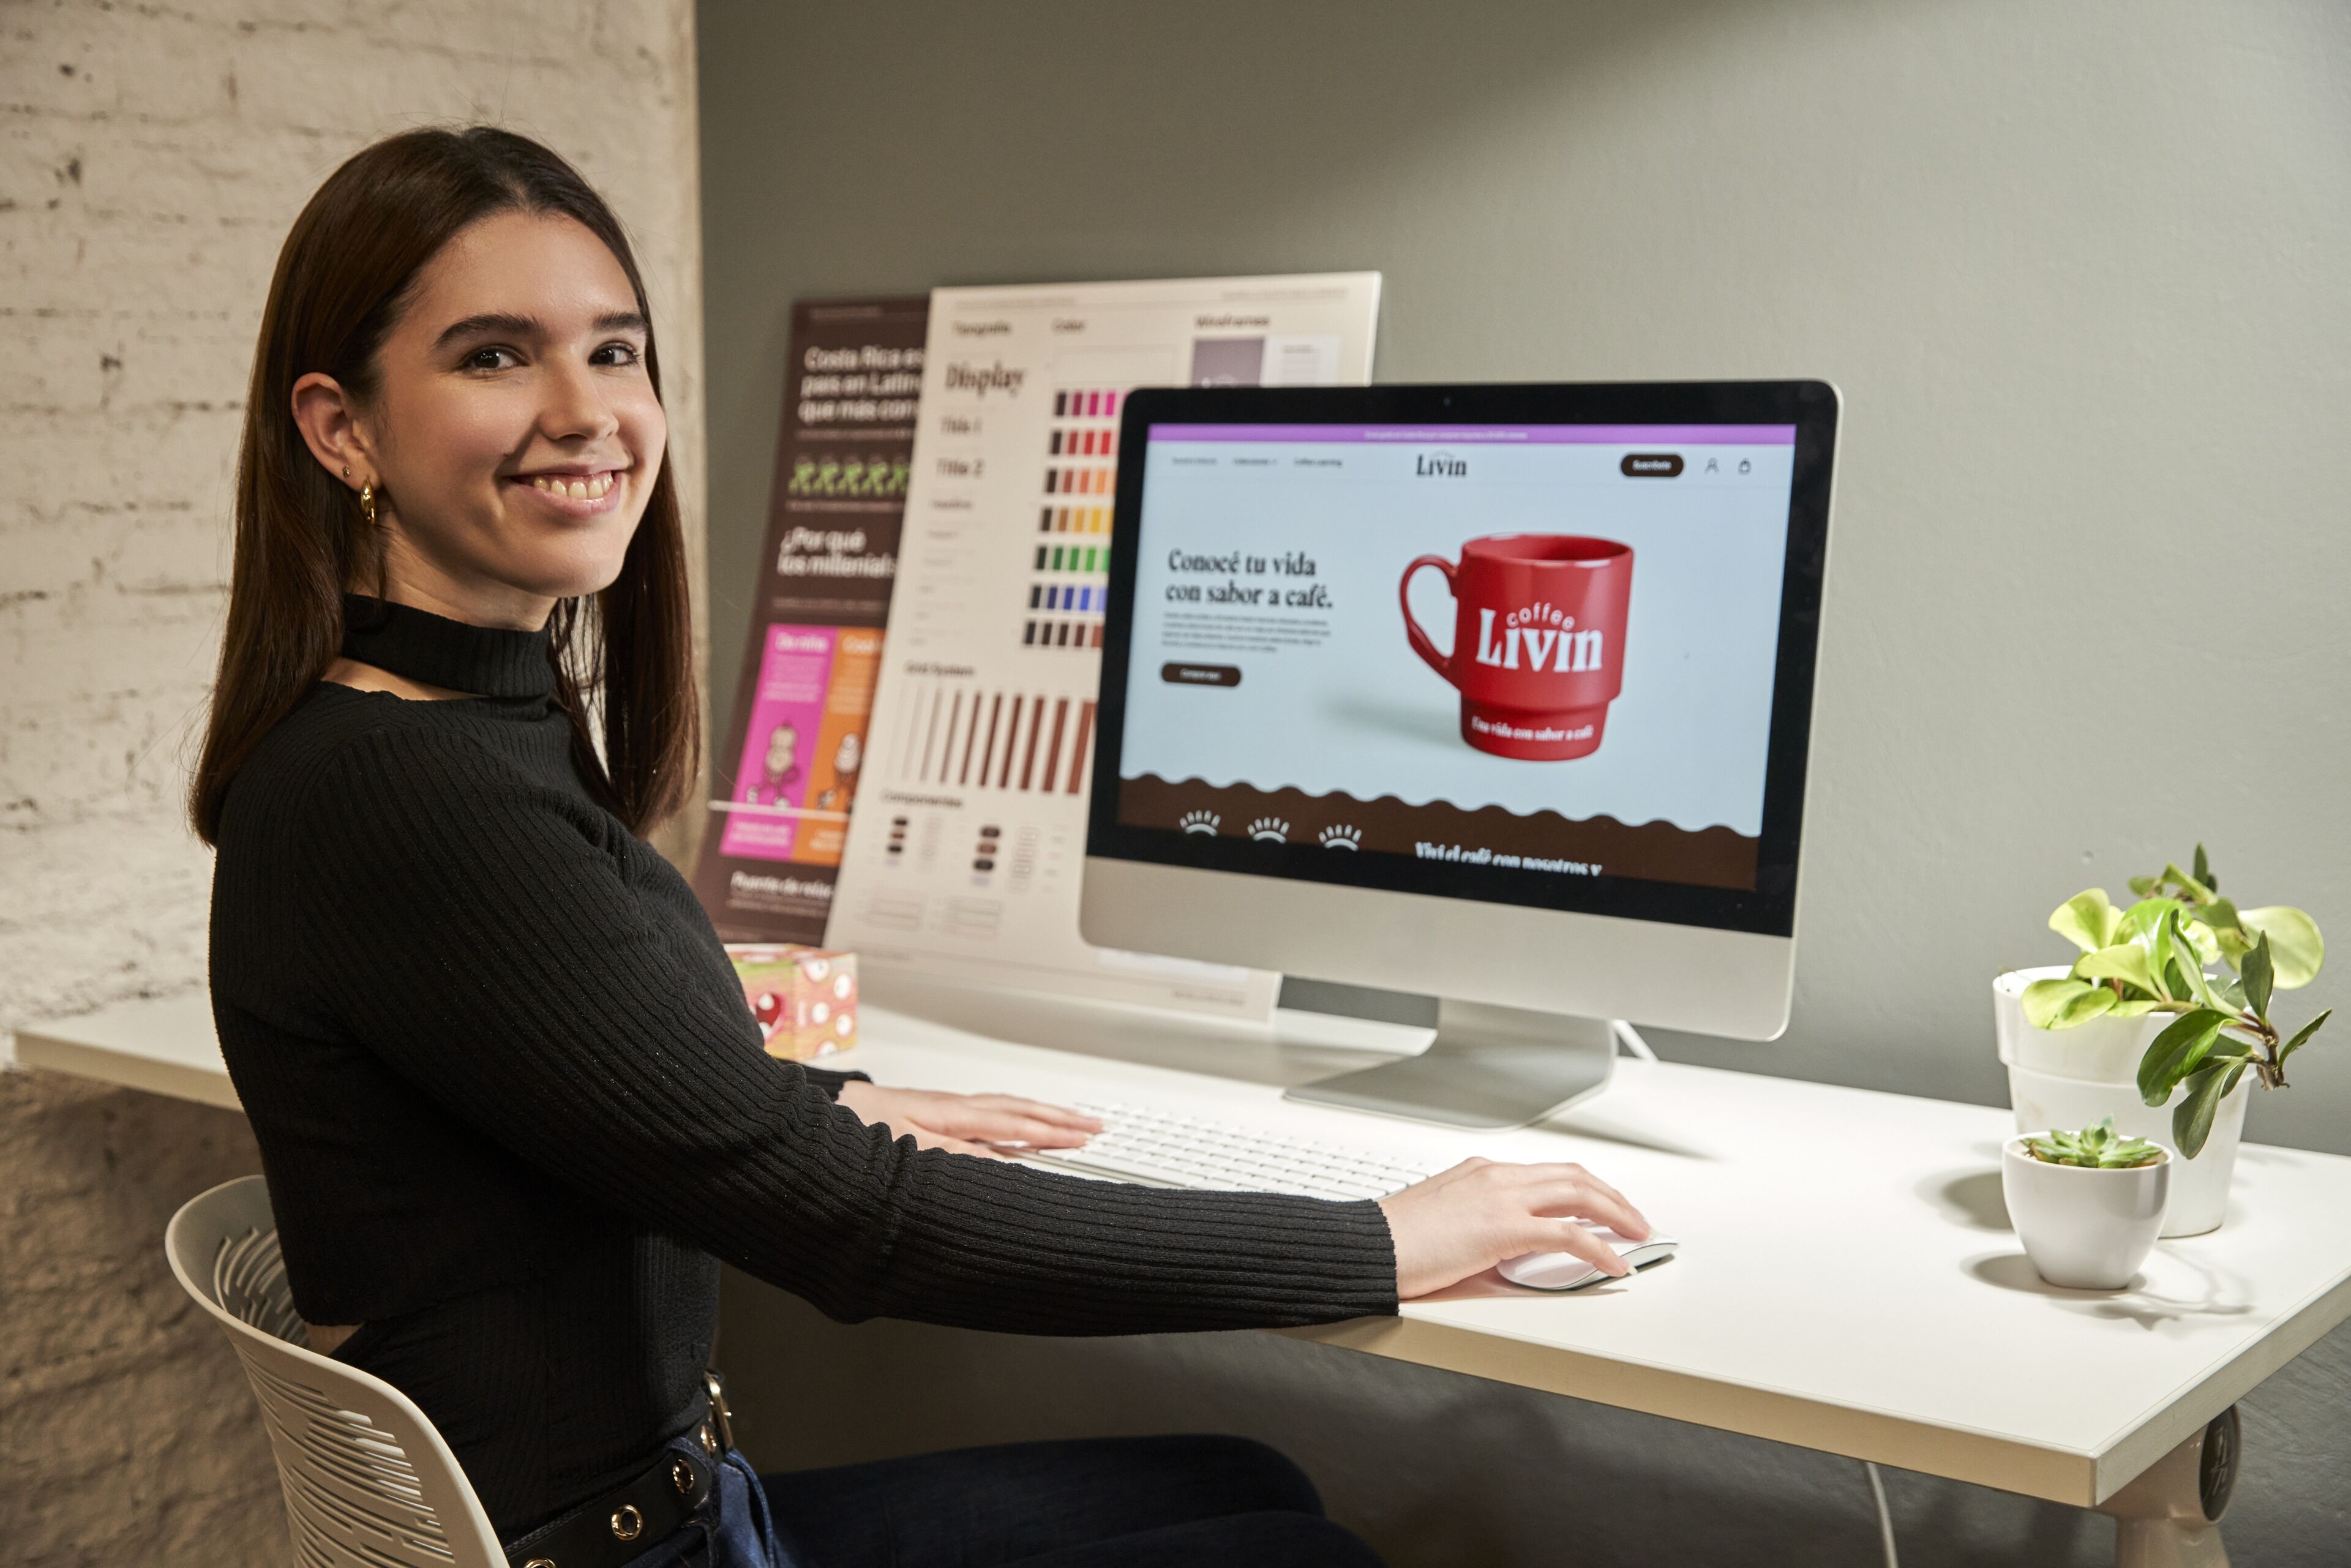 Una mujer joven sonriendo a la cámara, sentada en un espacio de trabajo moderno con un ordenador que muestra un anuncio de café.